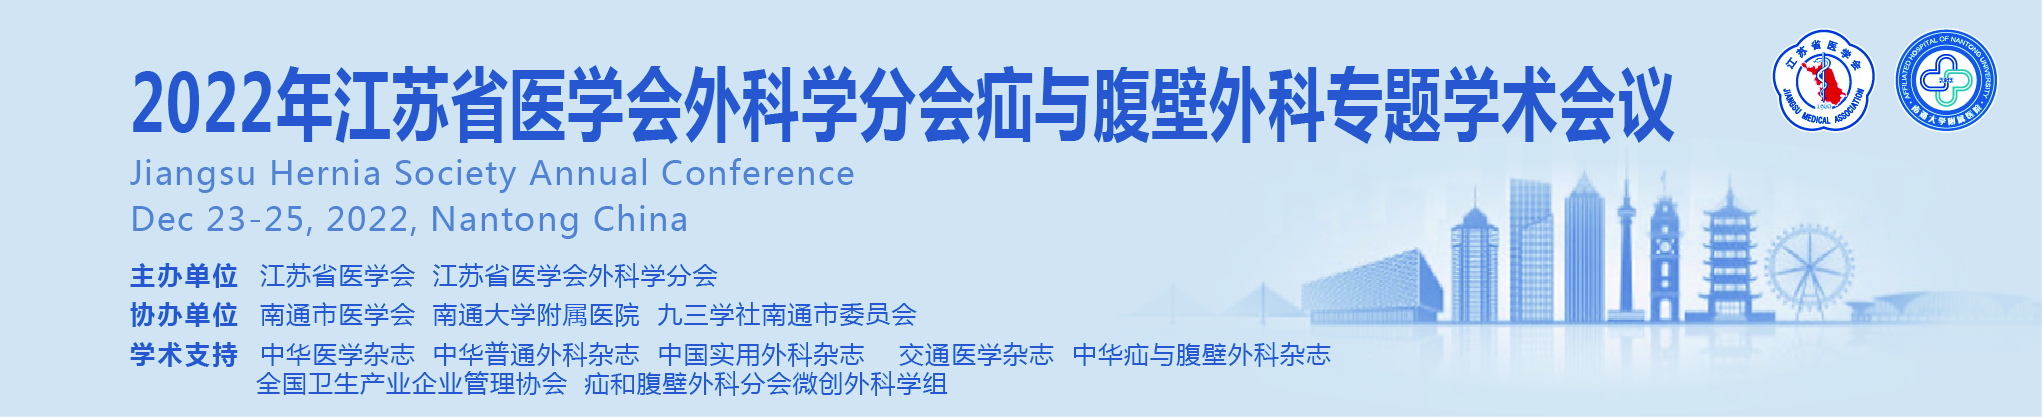 江苏省医学会外科学分会2022年疝与腹壁外科专题学术会议